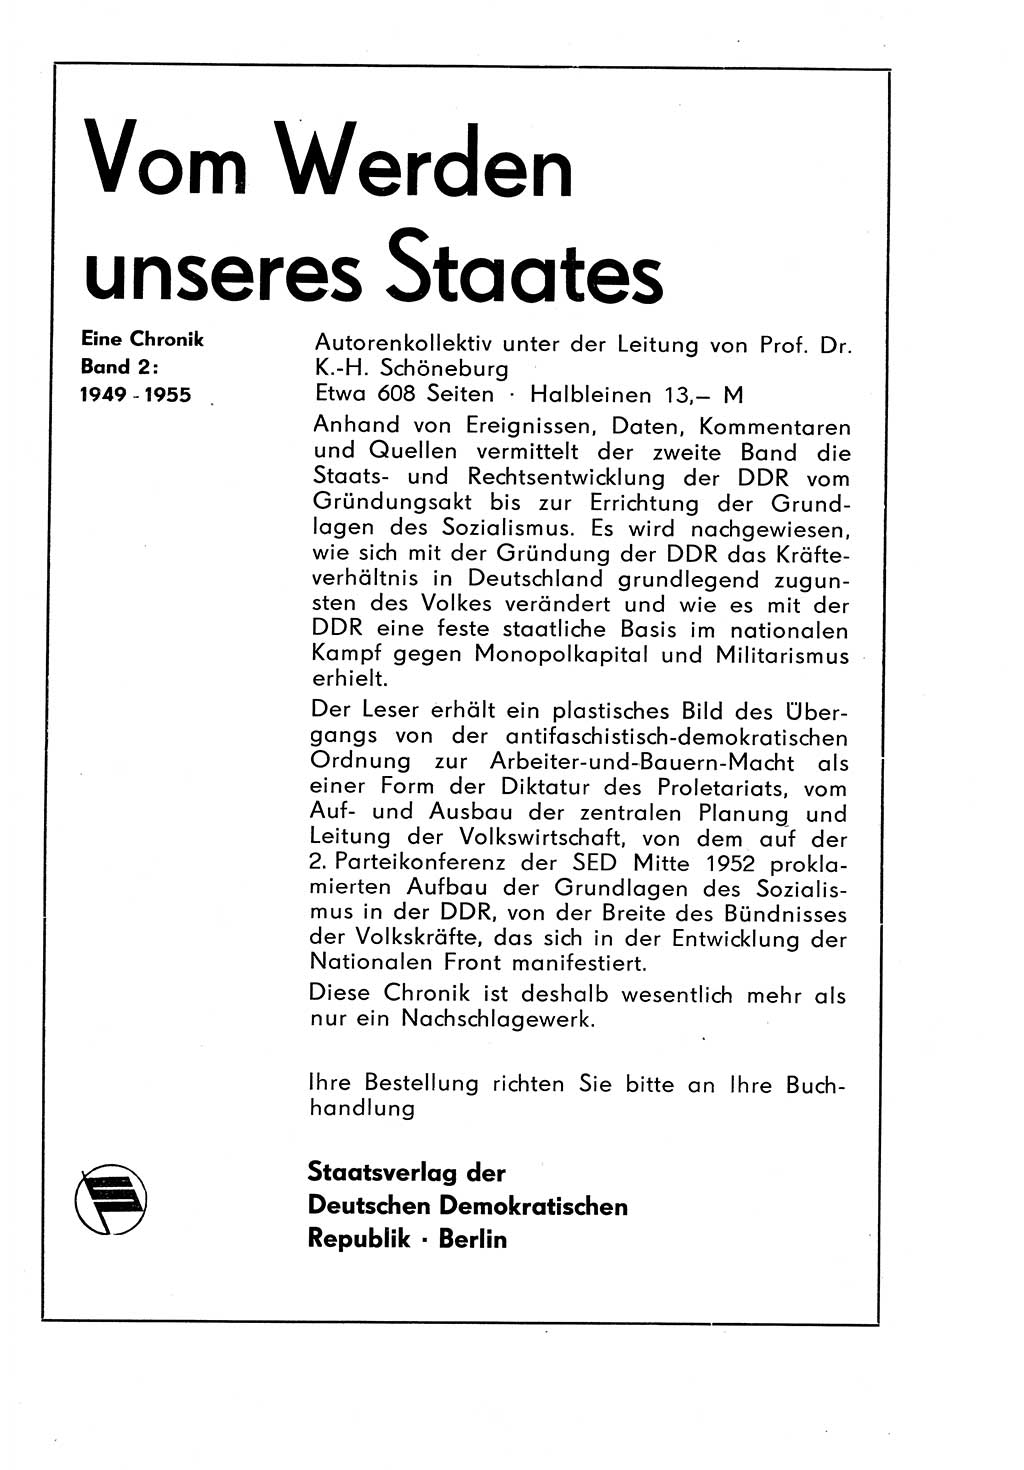 Staat und Recht (StuR), 17. Jahrgang [Deutsche Demokratische Republik (DDR)] 1968, Seite 1500 (StuR DDR 1968, S. 1500)